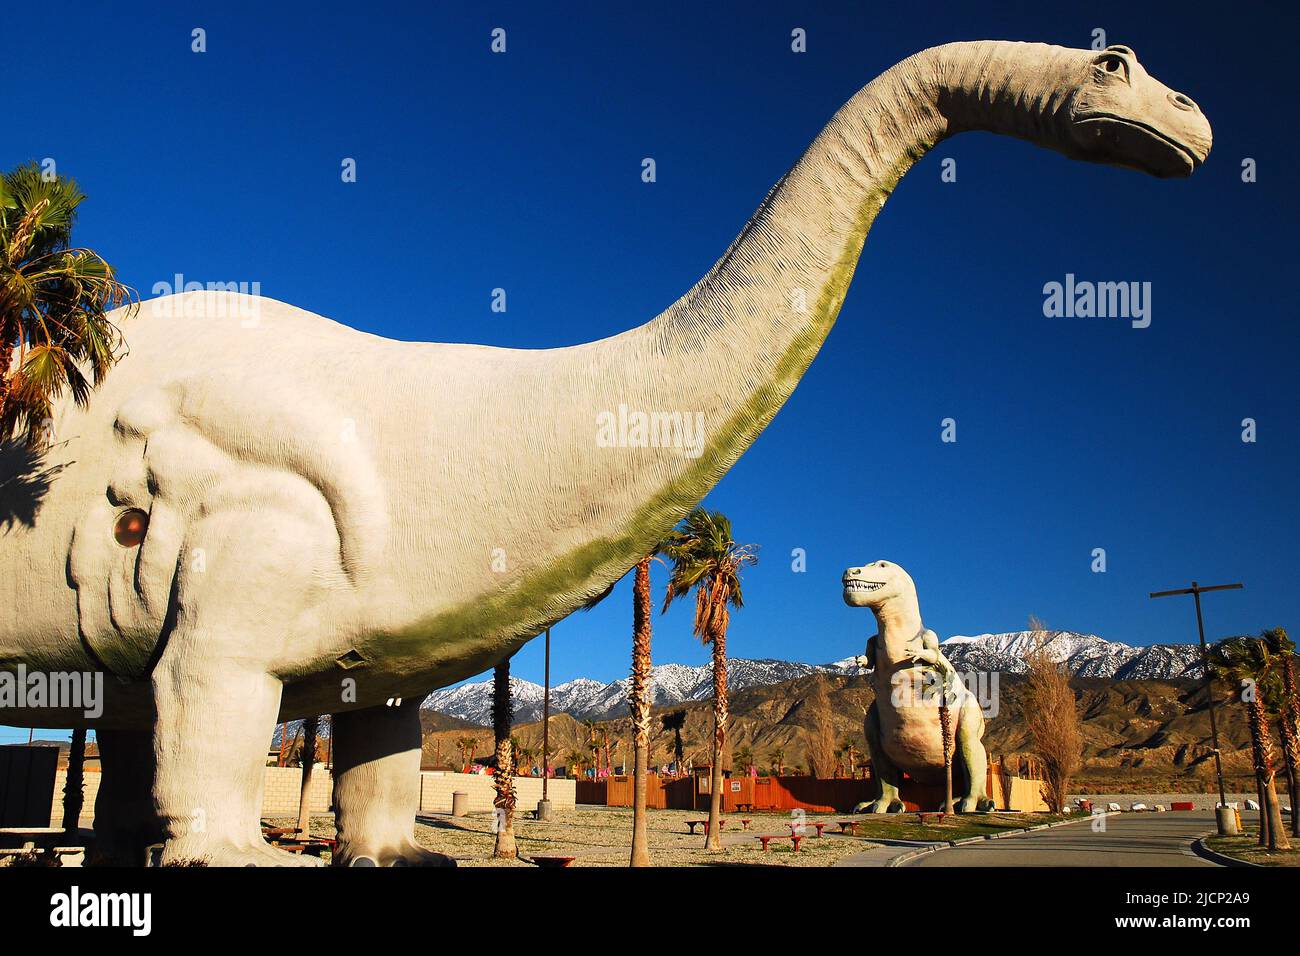 Deux grands dinosaures se trouvent à Cabazon, Californie, et cherchent à attirer les voyageurs et les touristes sur l'autoroute à proximité Banque D'Images